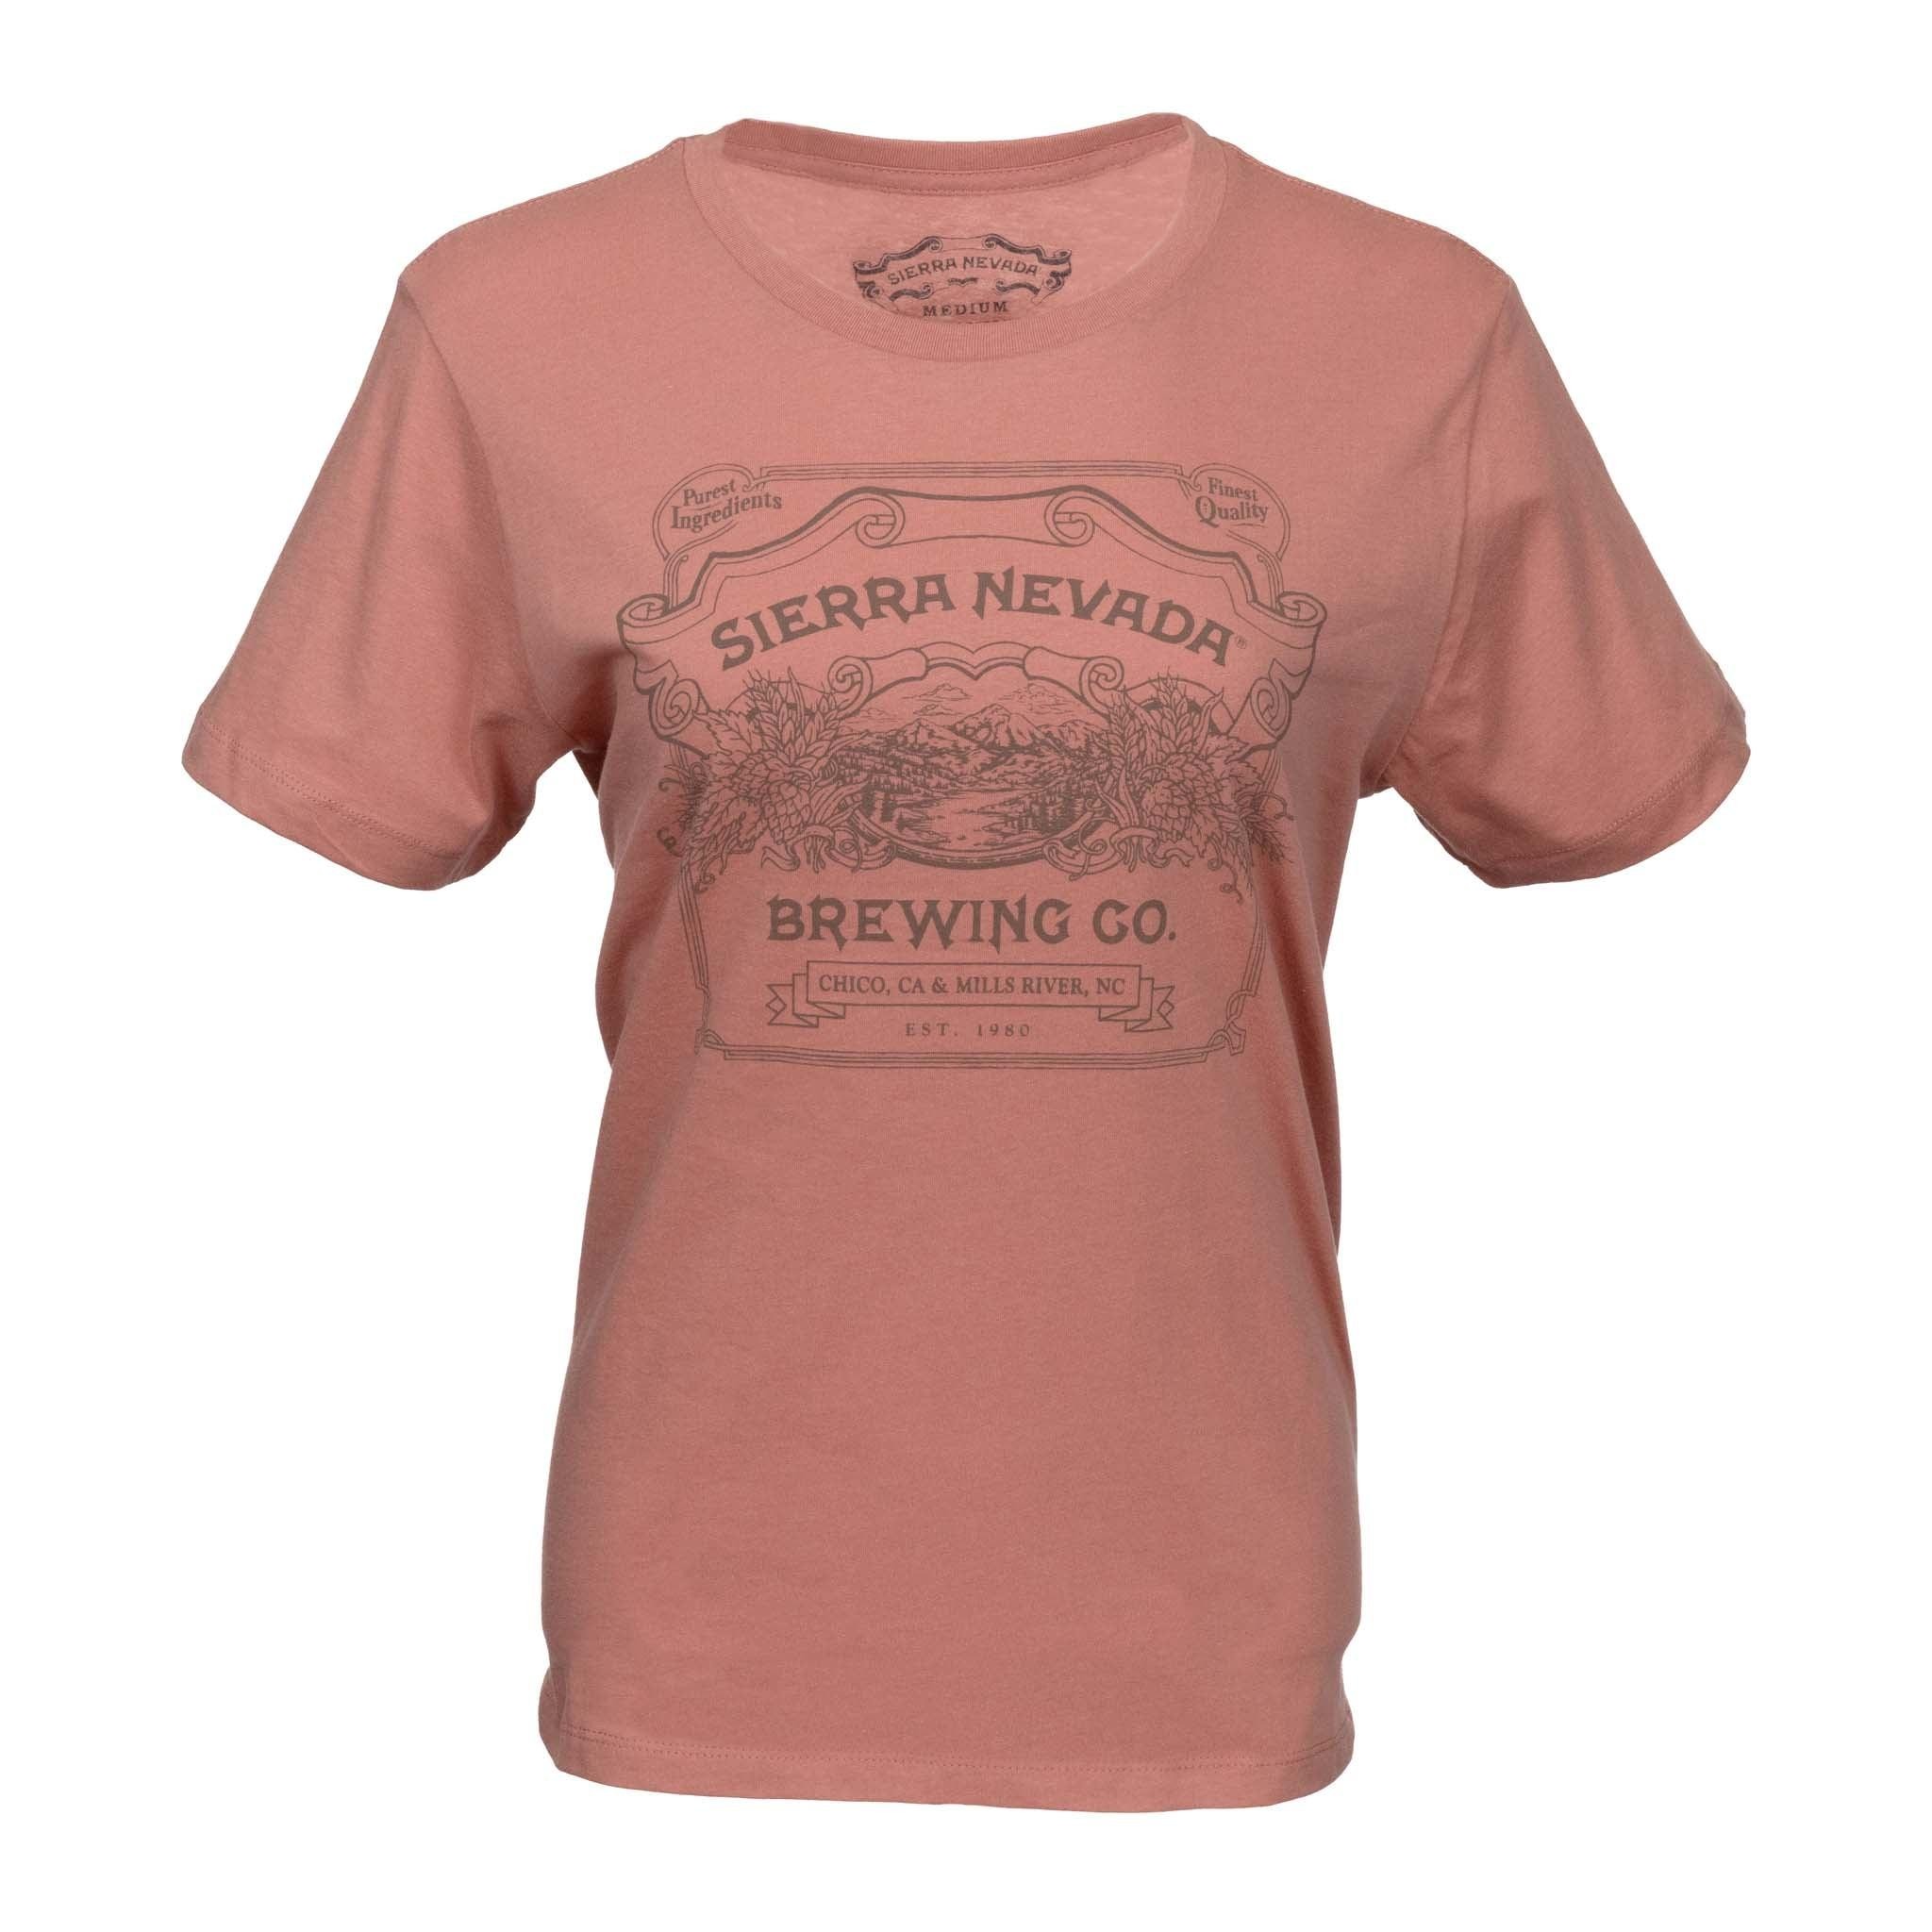 Handcrafted Short Sleeve T-Shirt Desert Pink Women's - XL